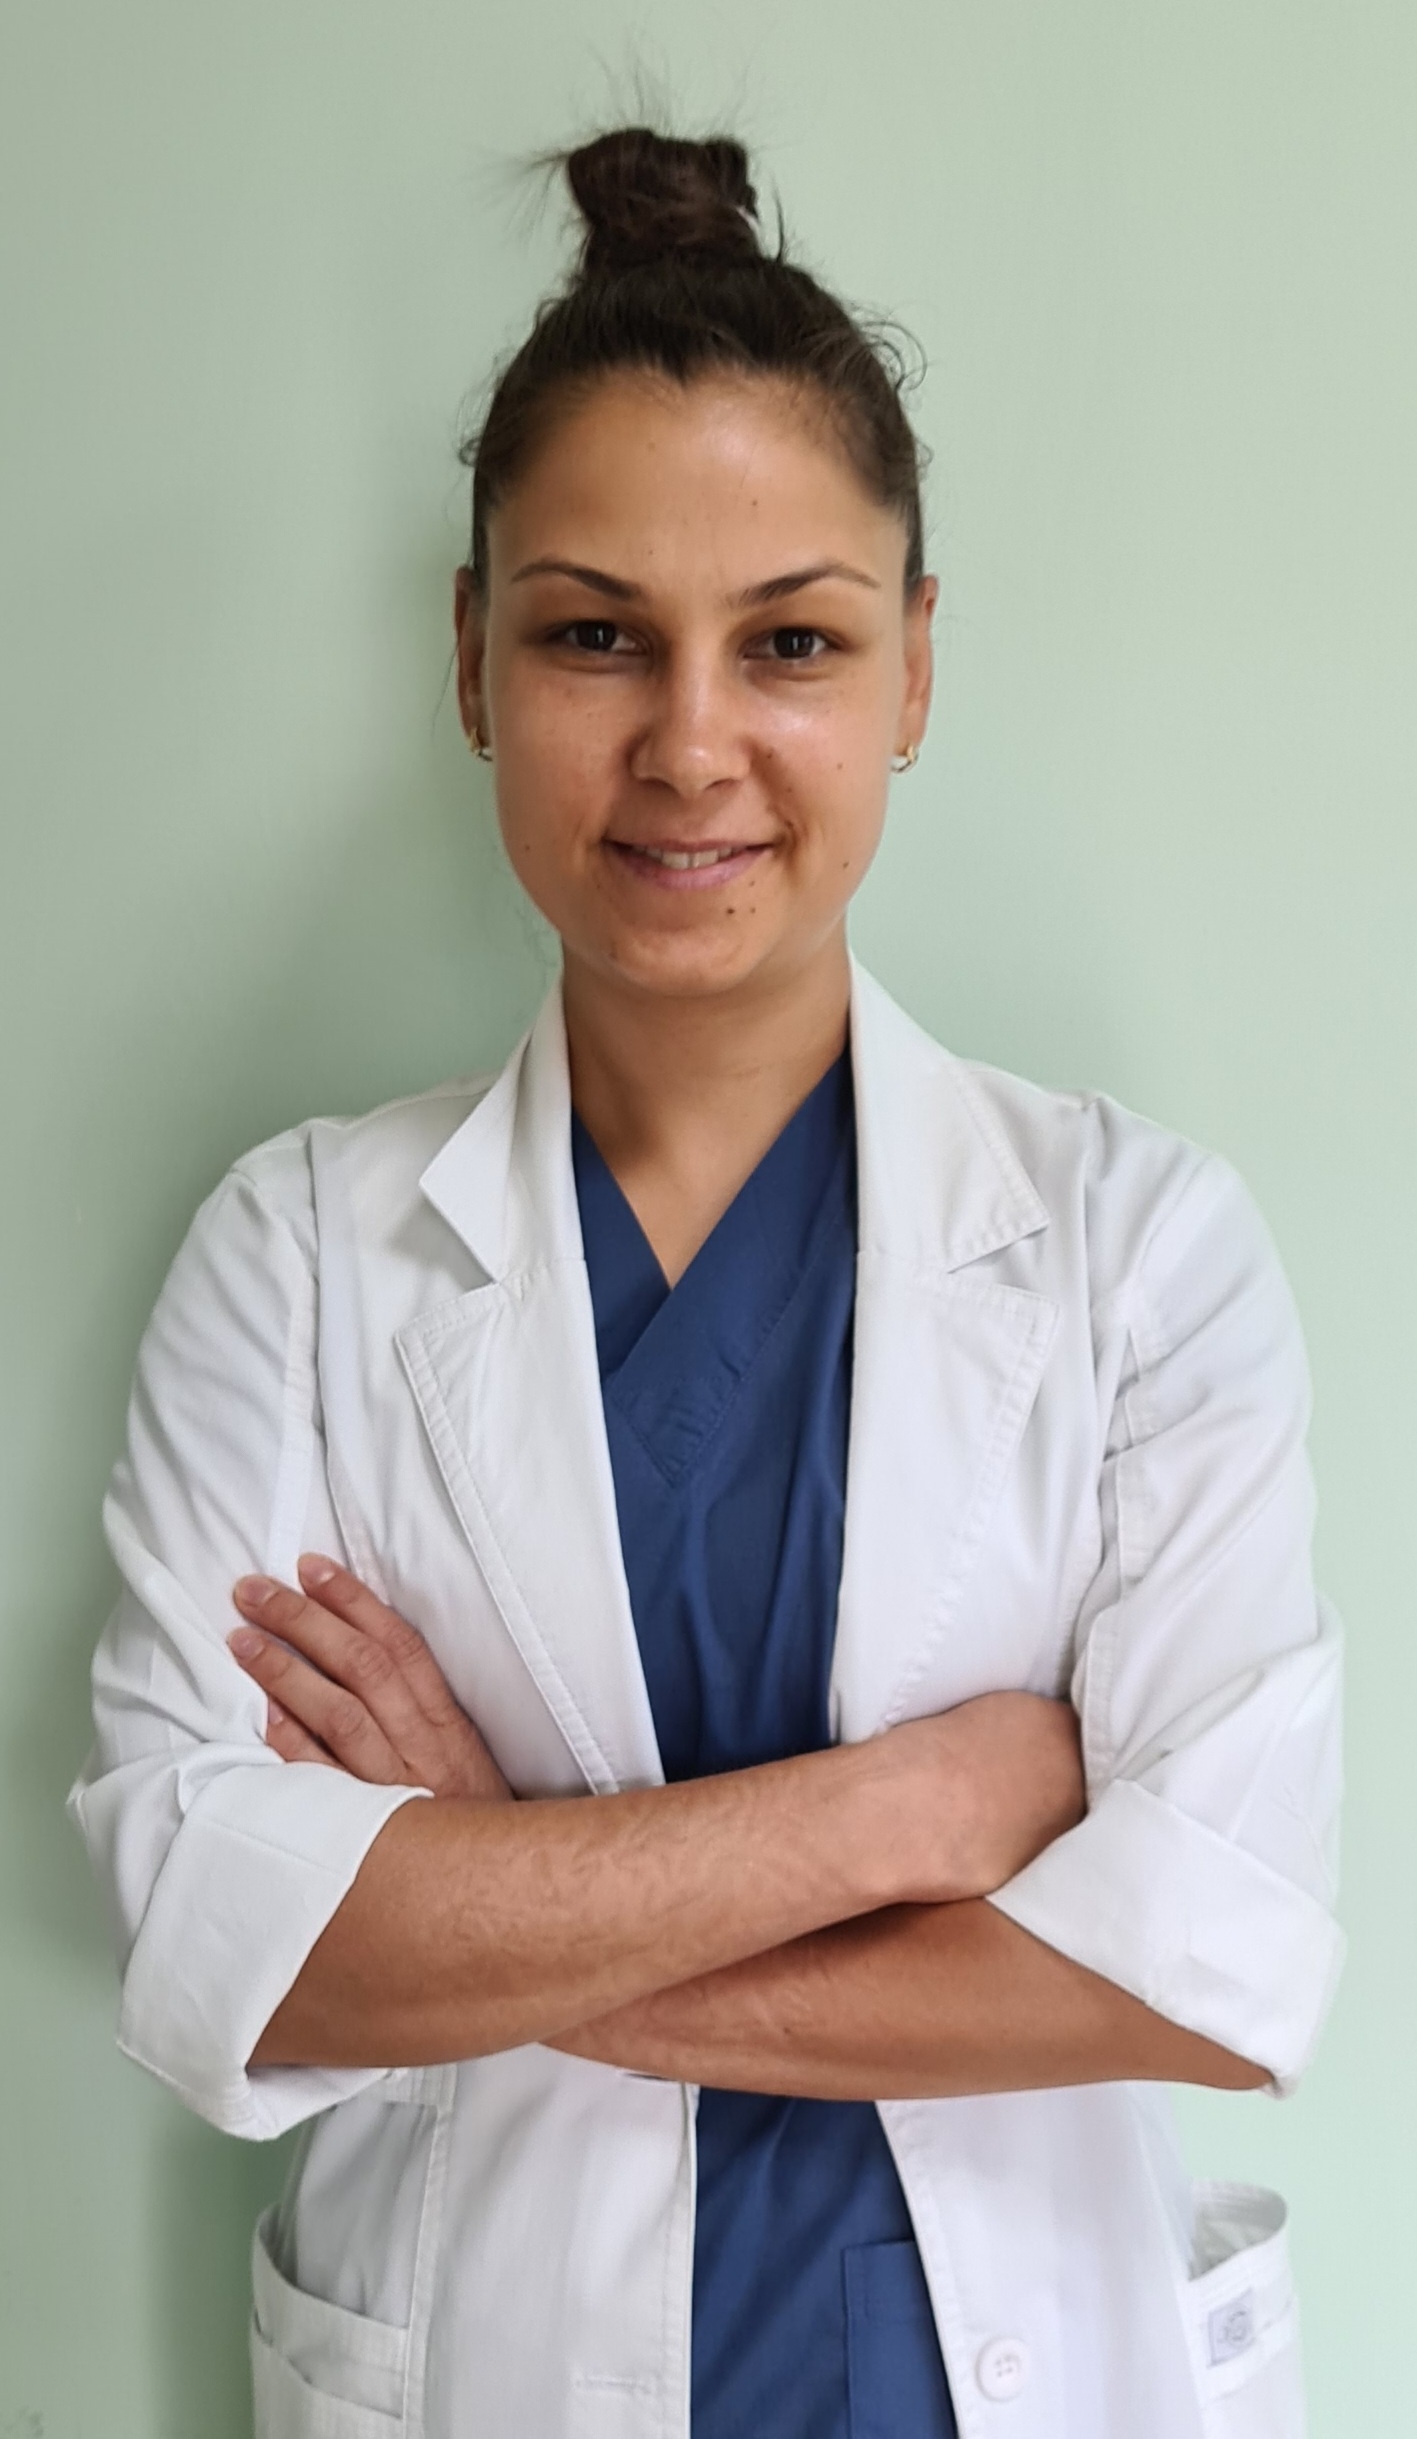 Д-р Стефка Бюлбюлева, неврохирург: България има нужда от своите млади лекари и специалисти